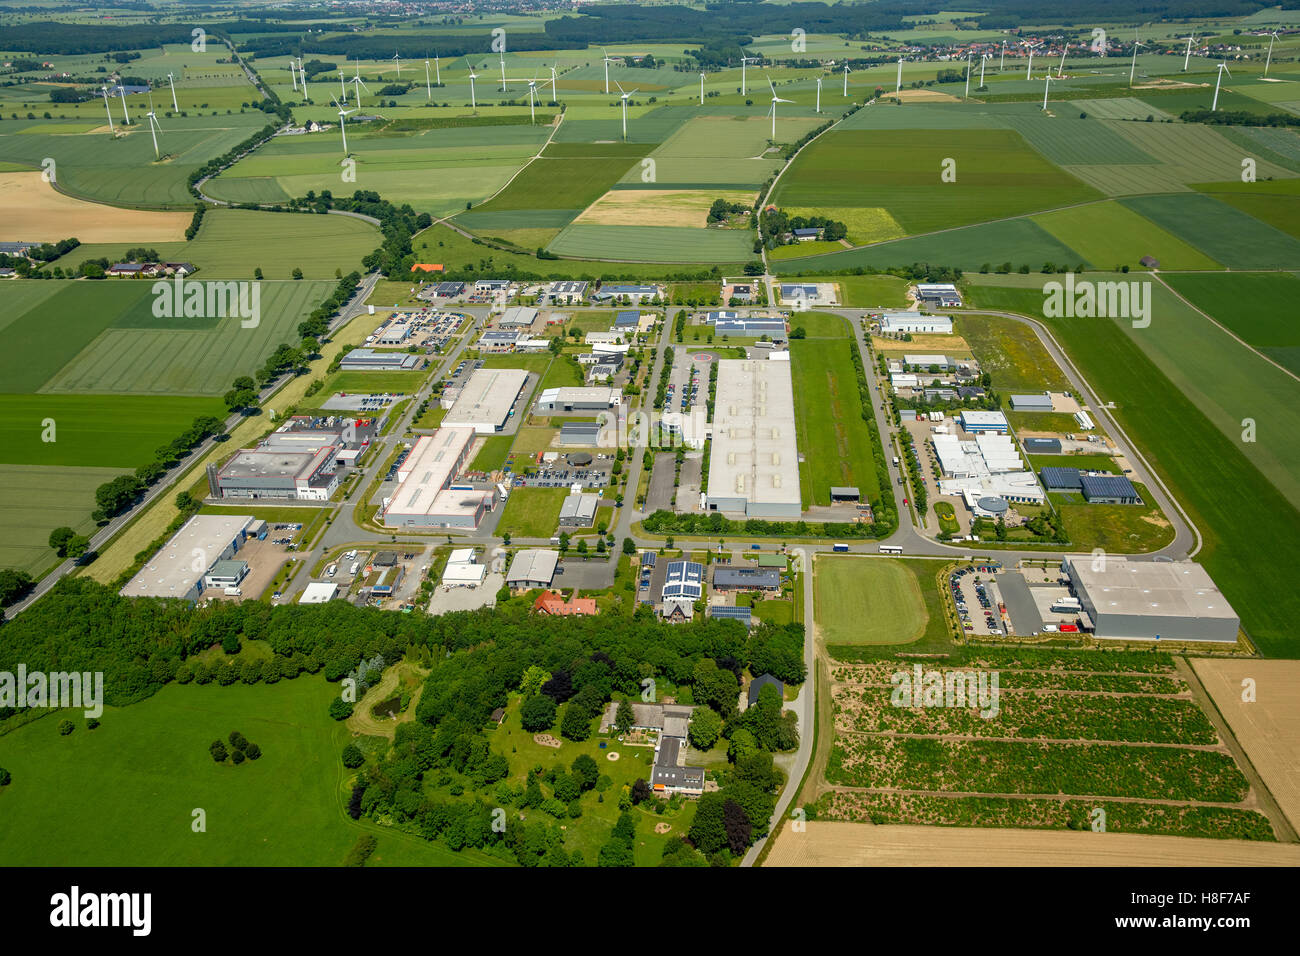 Vista aérea de la zona comercial, Zona Industrial, turbinas de viento detrás, Belecke, Warstein, Sauerland, Renania del Norte-Westfalia Foto de stock